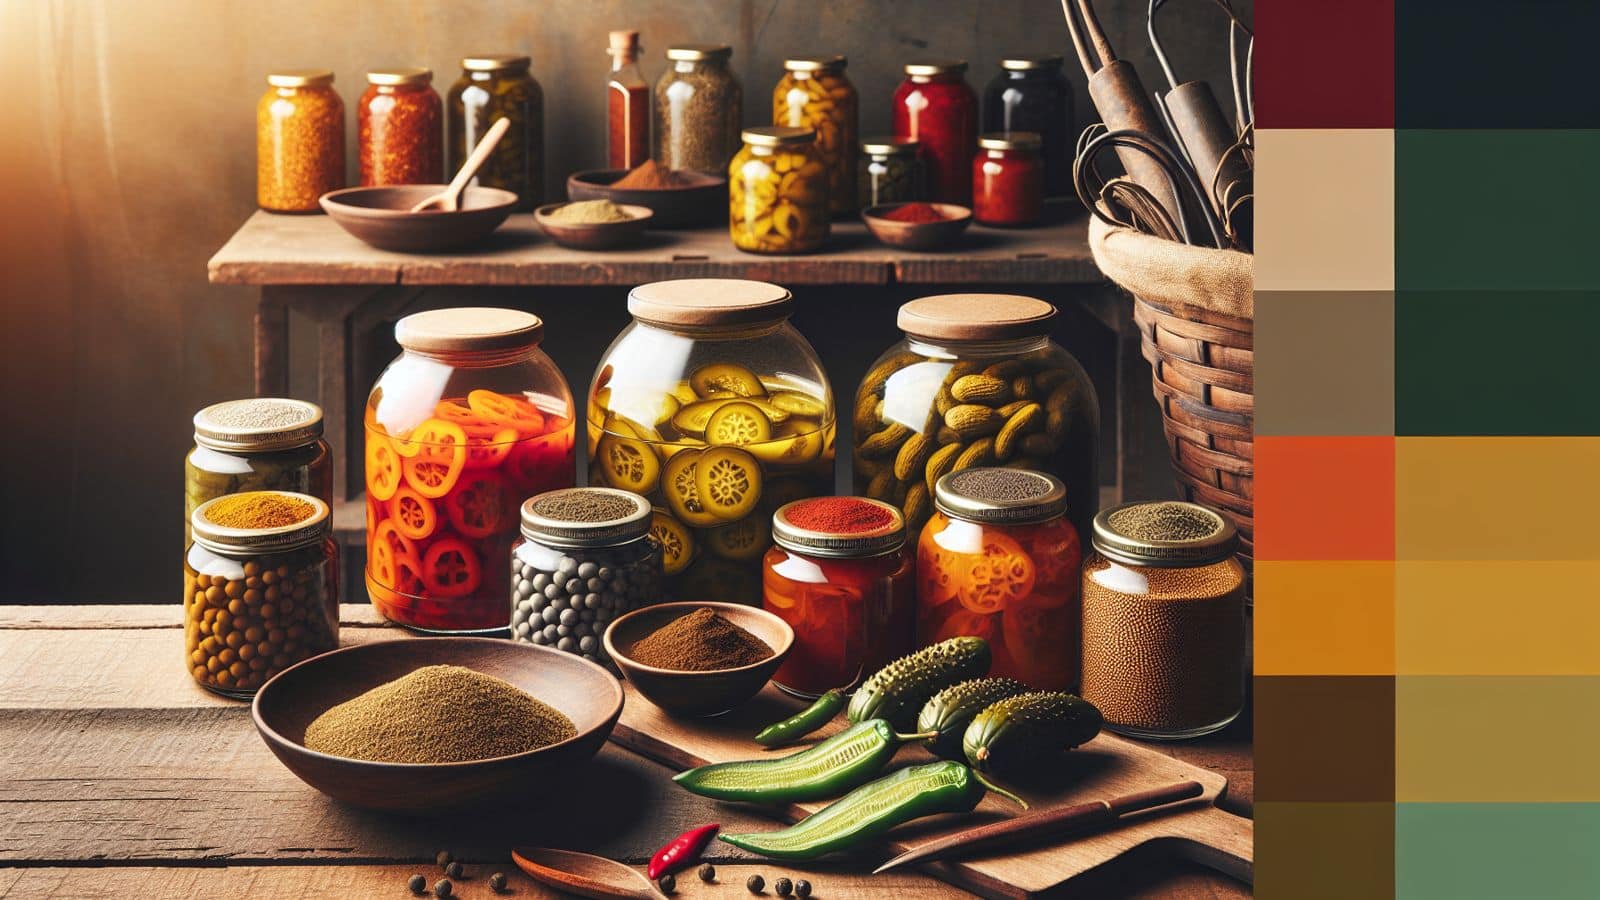 Ingredients used in Andhra cuisine's vegan pickles